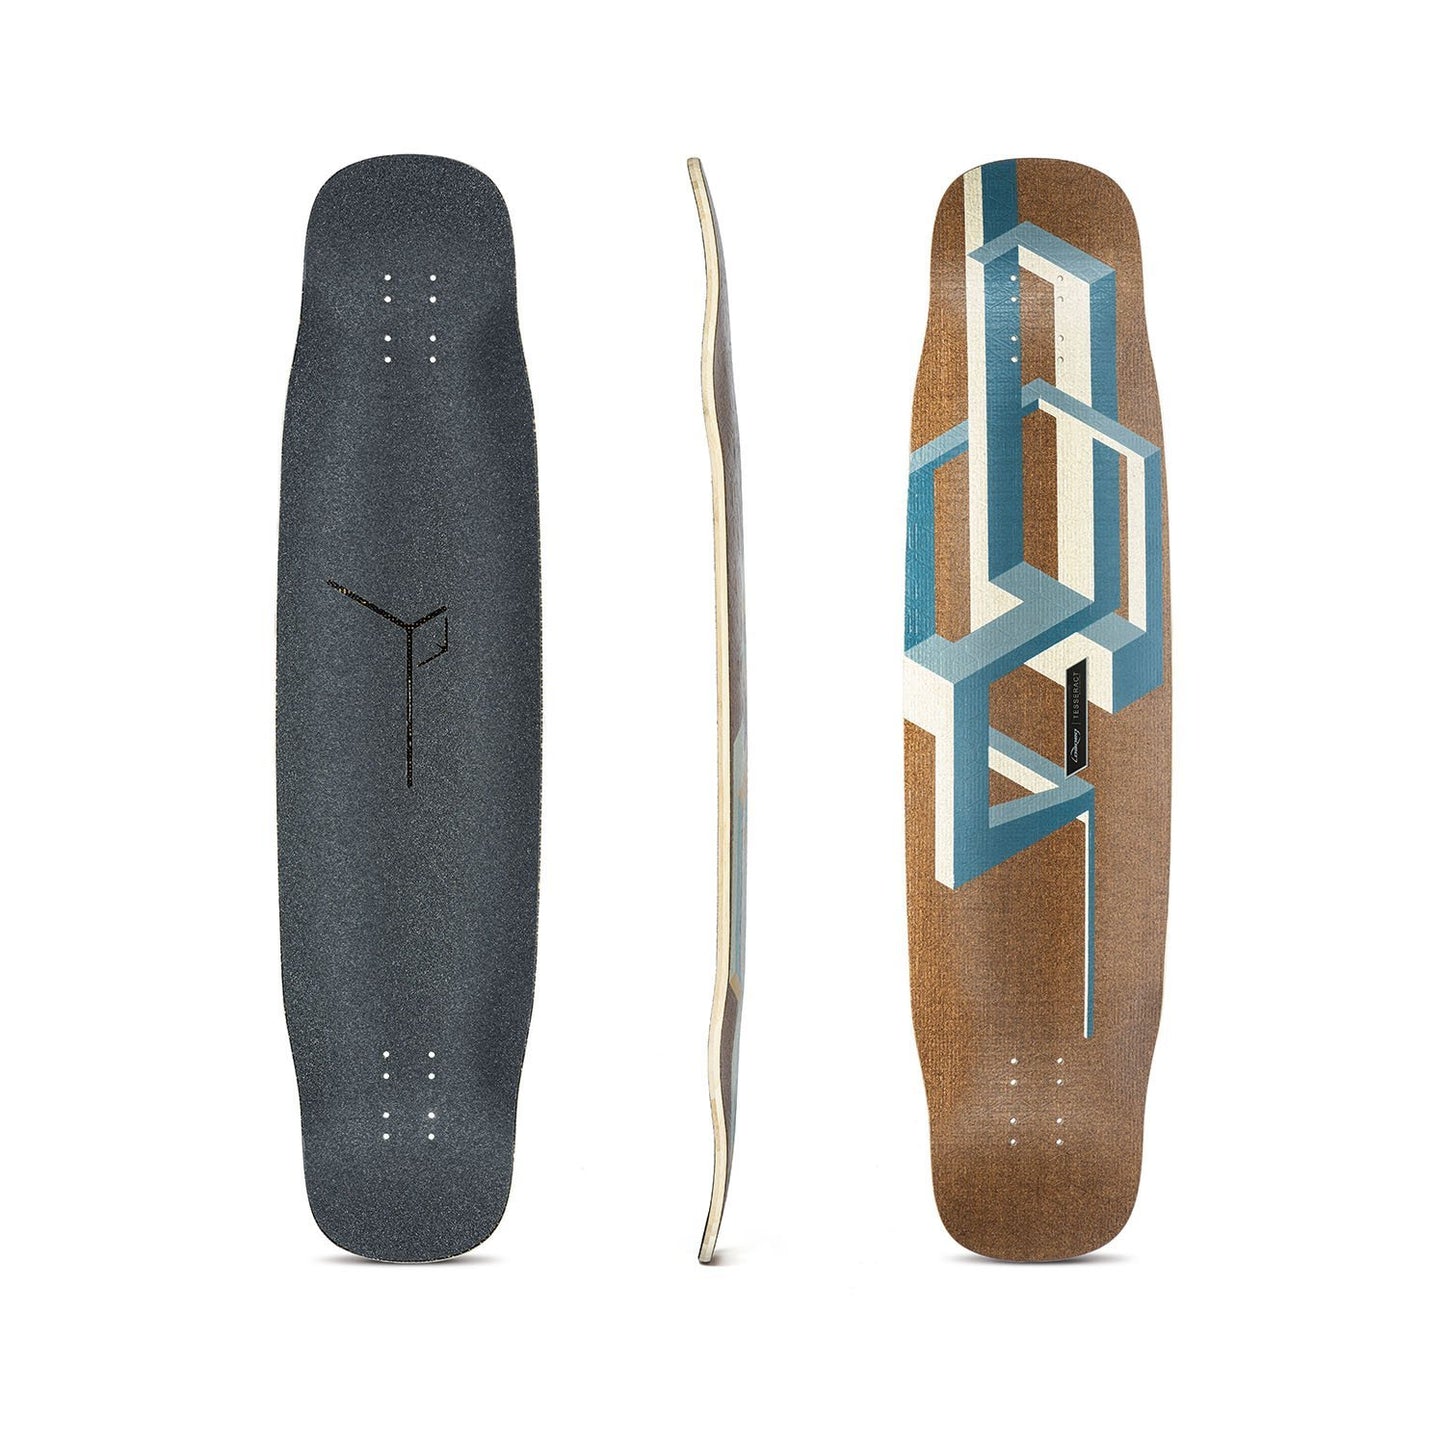 Loaded: Basalt Tesseract Longboard Skateboard Deck - Motion Boardshop